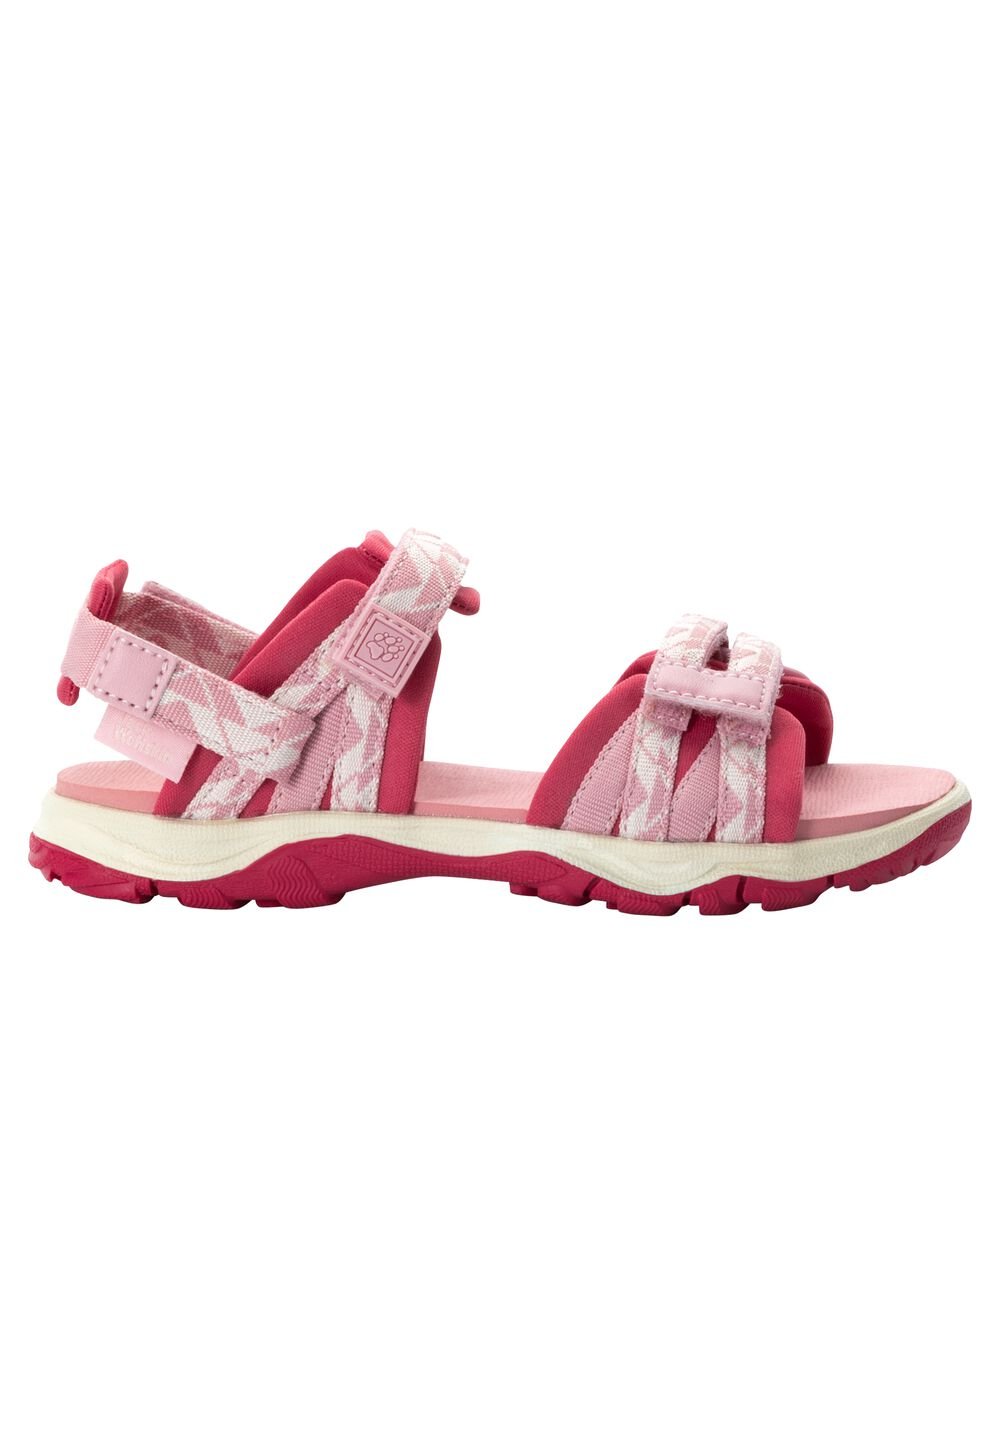 Jack Wolfskin 2 IN 1 Sandal Kids Kinderen sandalen 29 soft pink soft pink